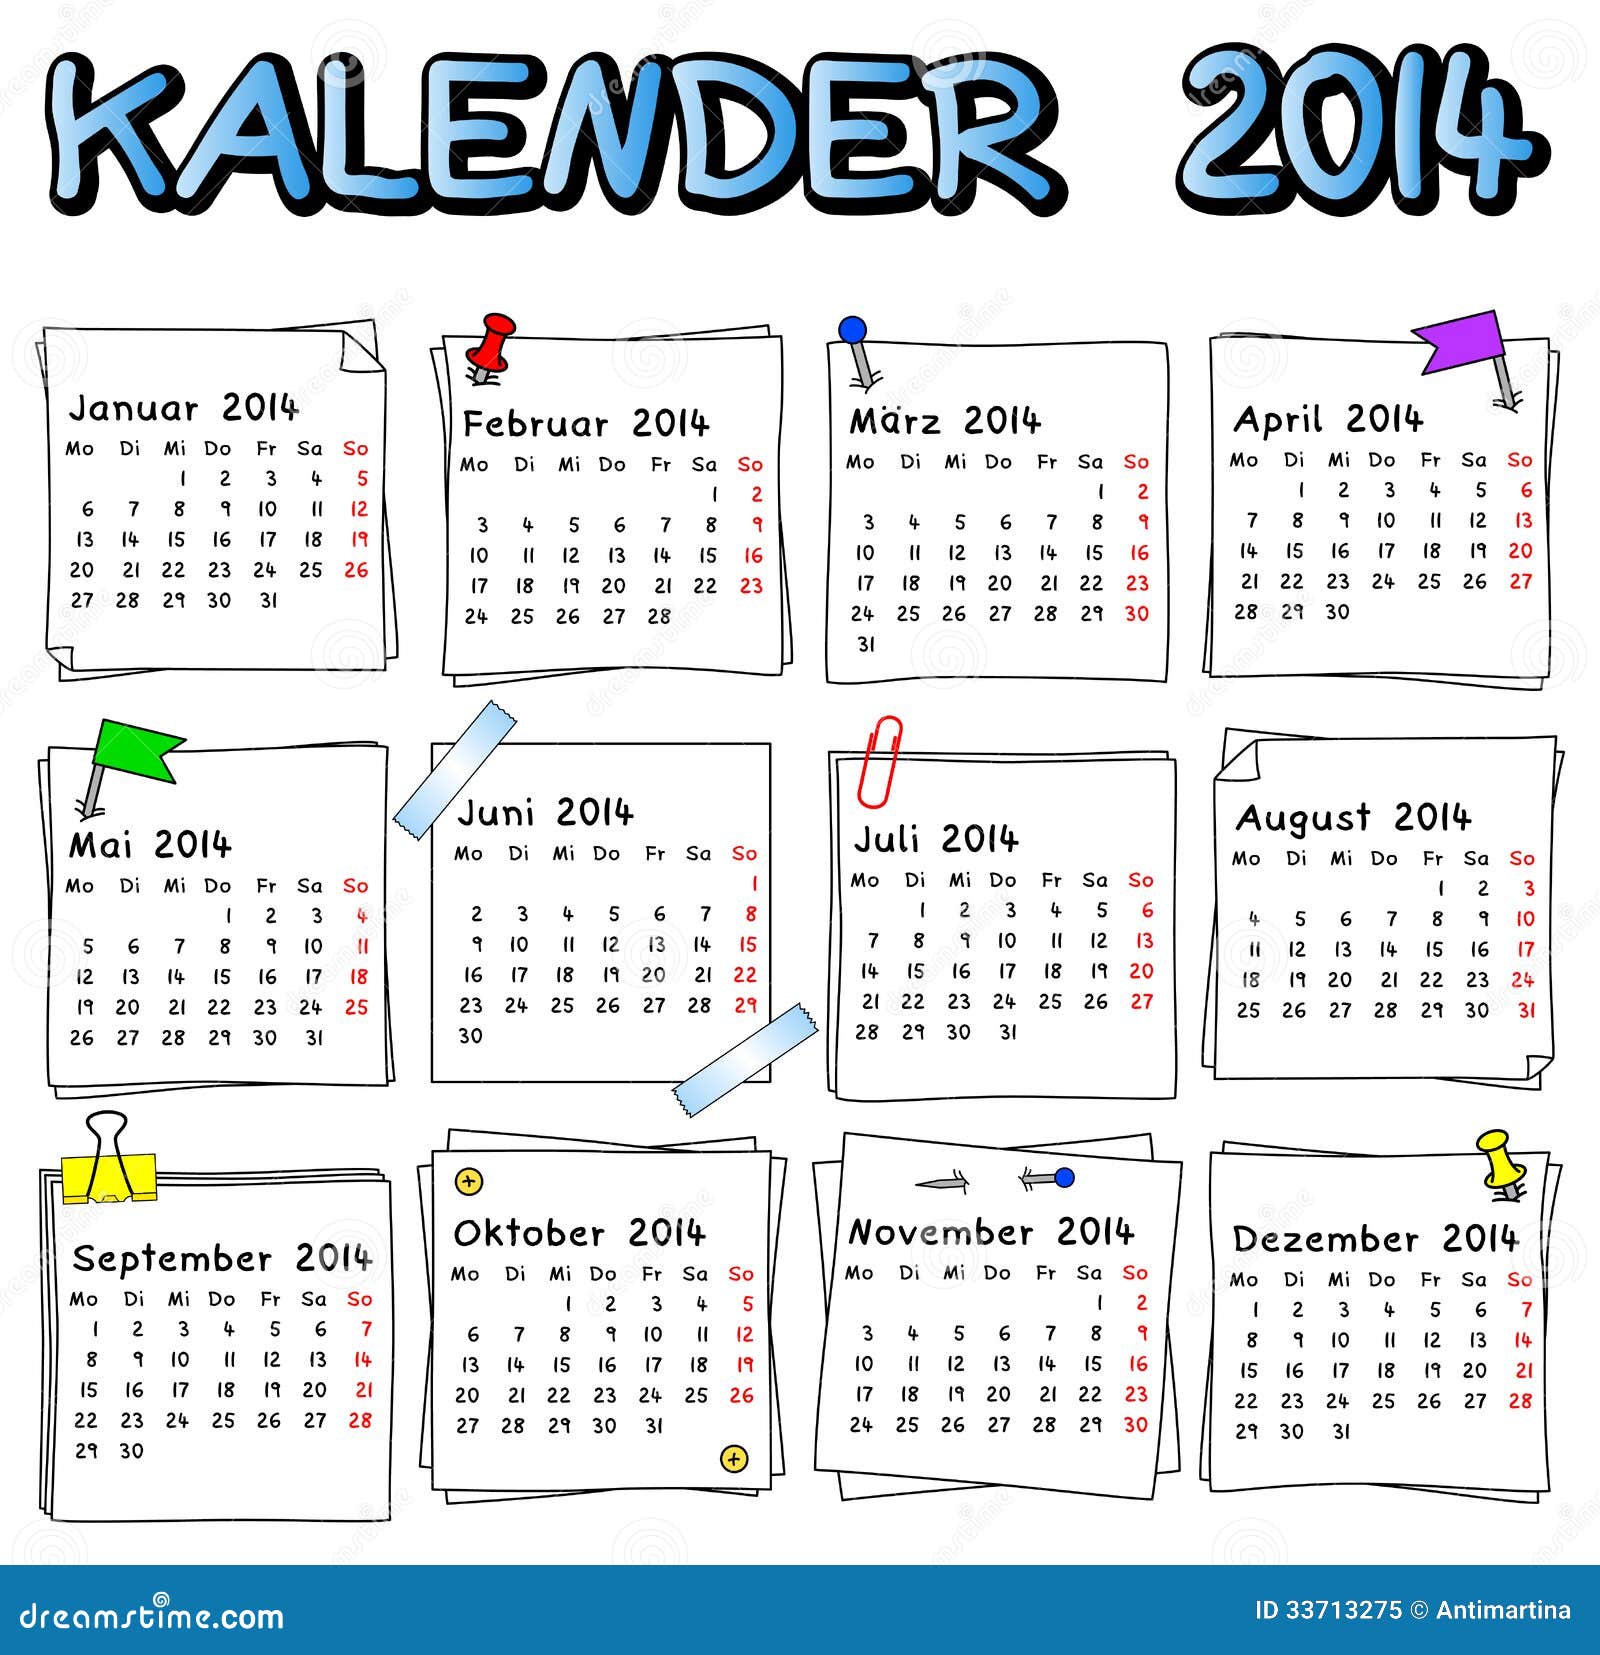 Duitse kalender 2014 Illustration begin - 33713275